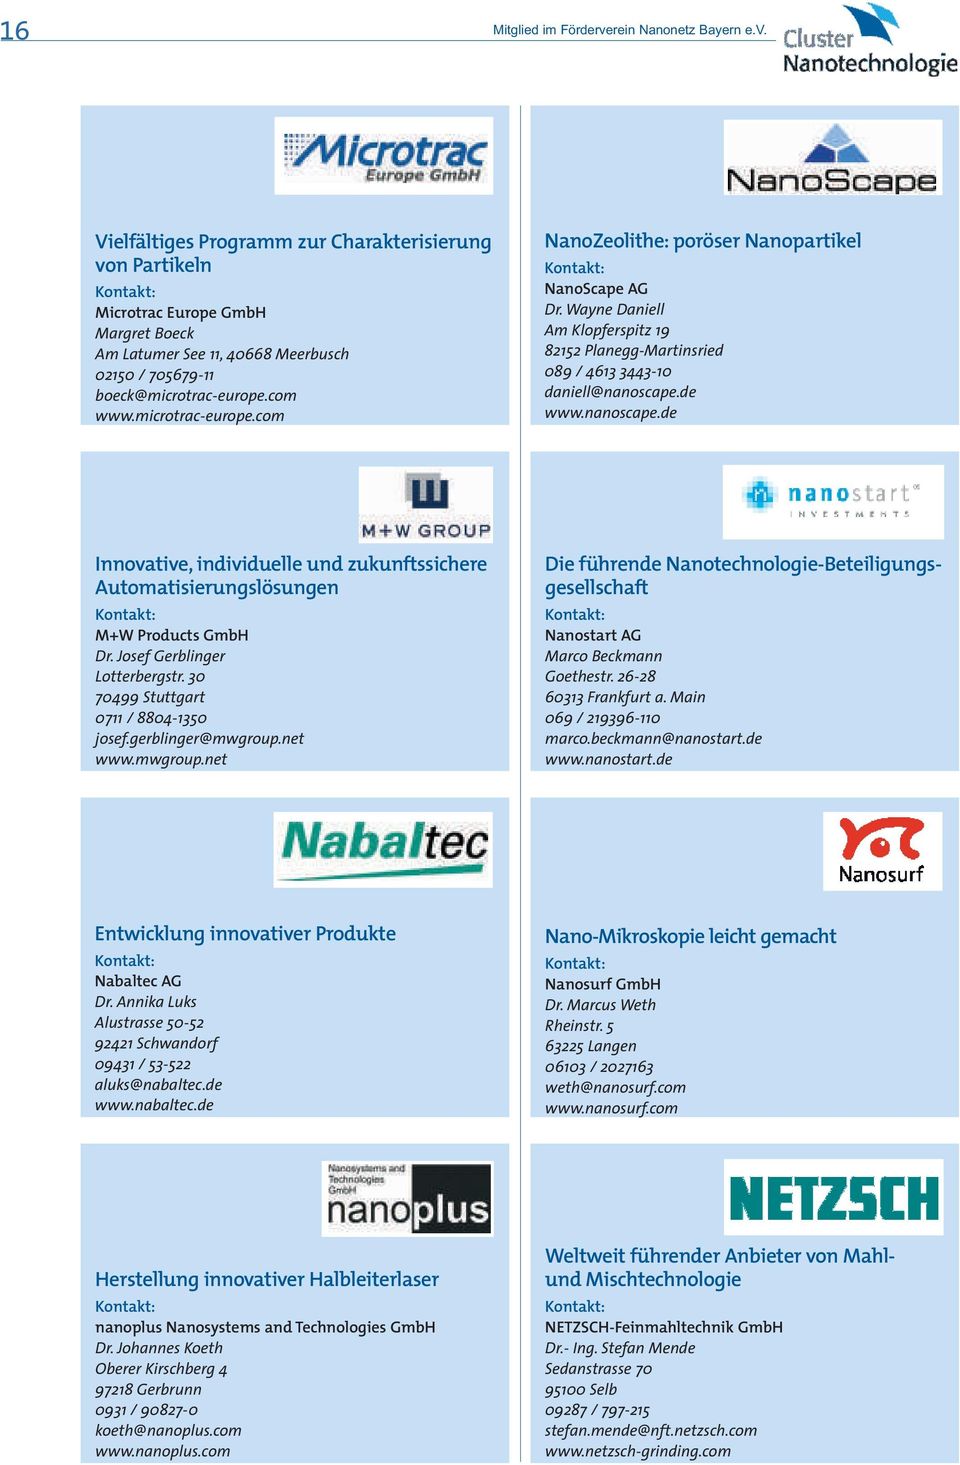 de www.nanoscape.de Innovative, individuelle und zukunftssichere Automatisierungslösungen M+W Products GmbH Dr. Josef Gerblinger Lotterbergstr. 30 70499 Stuttgart 0711 / 8804-1350 josef.